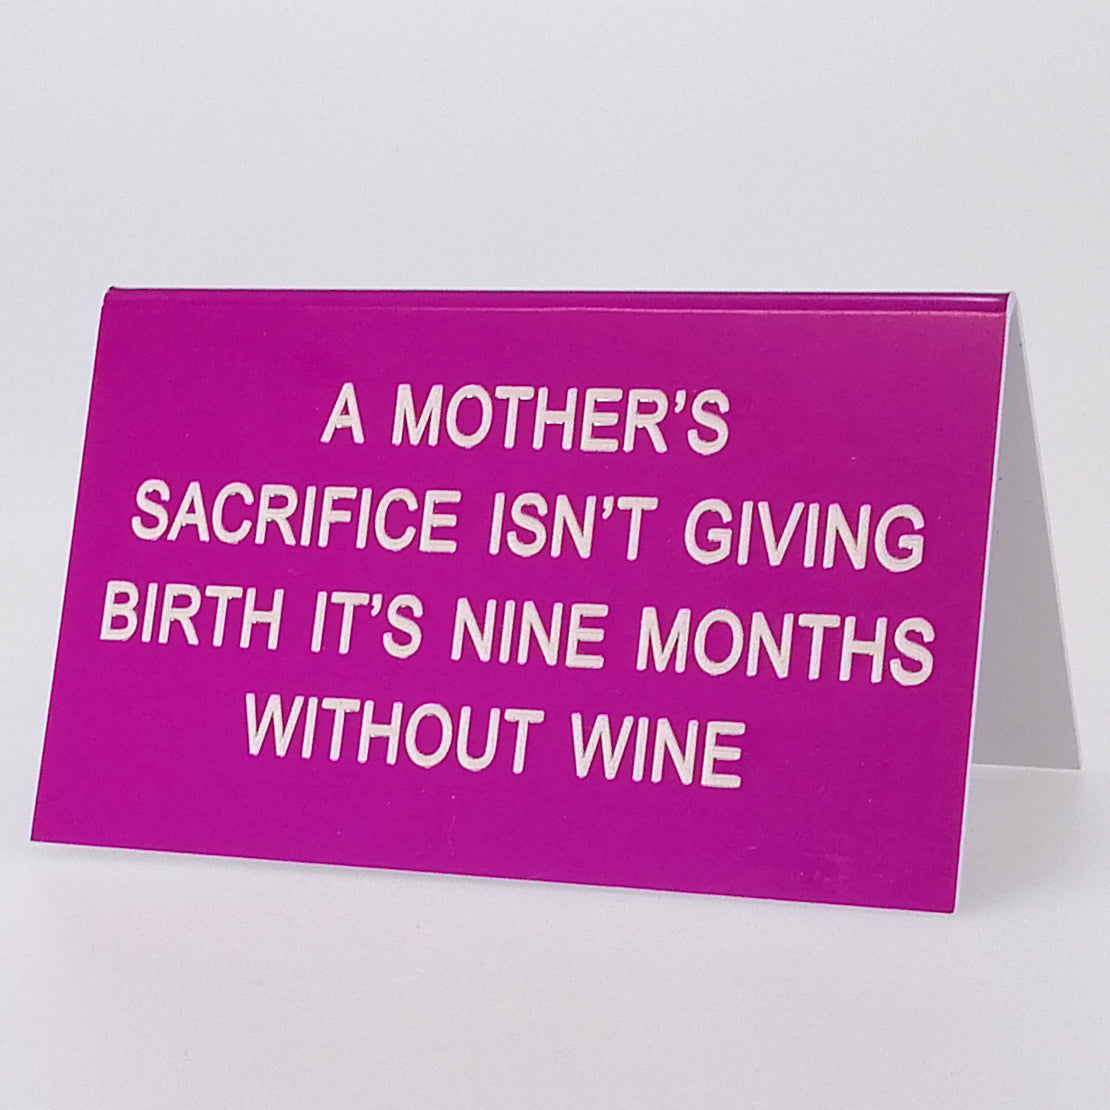 Sarcastic Desk Sign - 'A Mother's Sacrifice...'